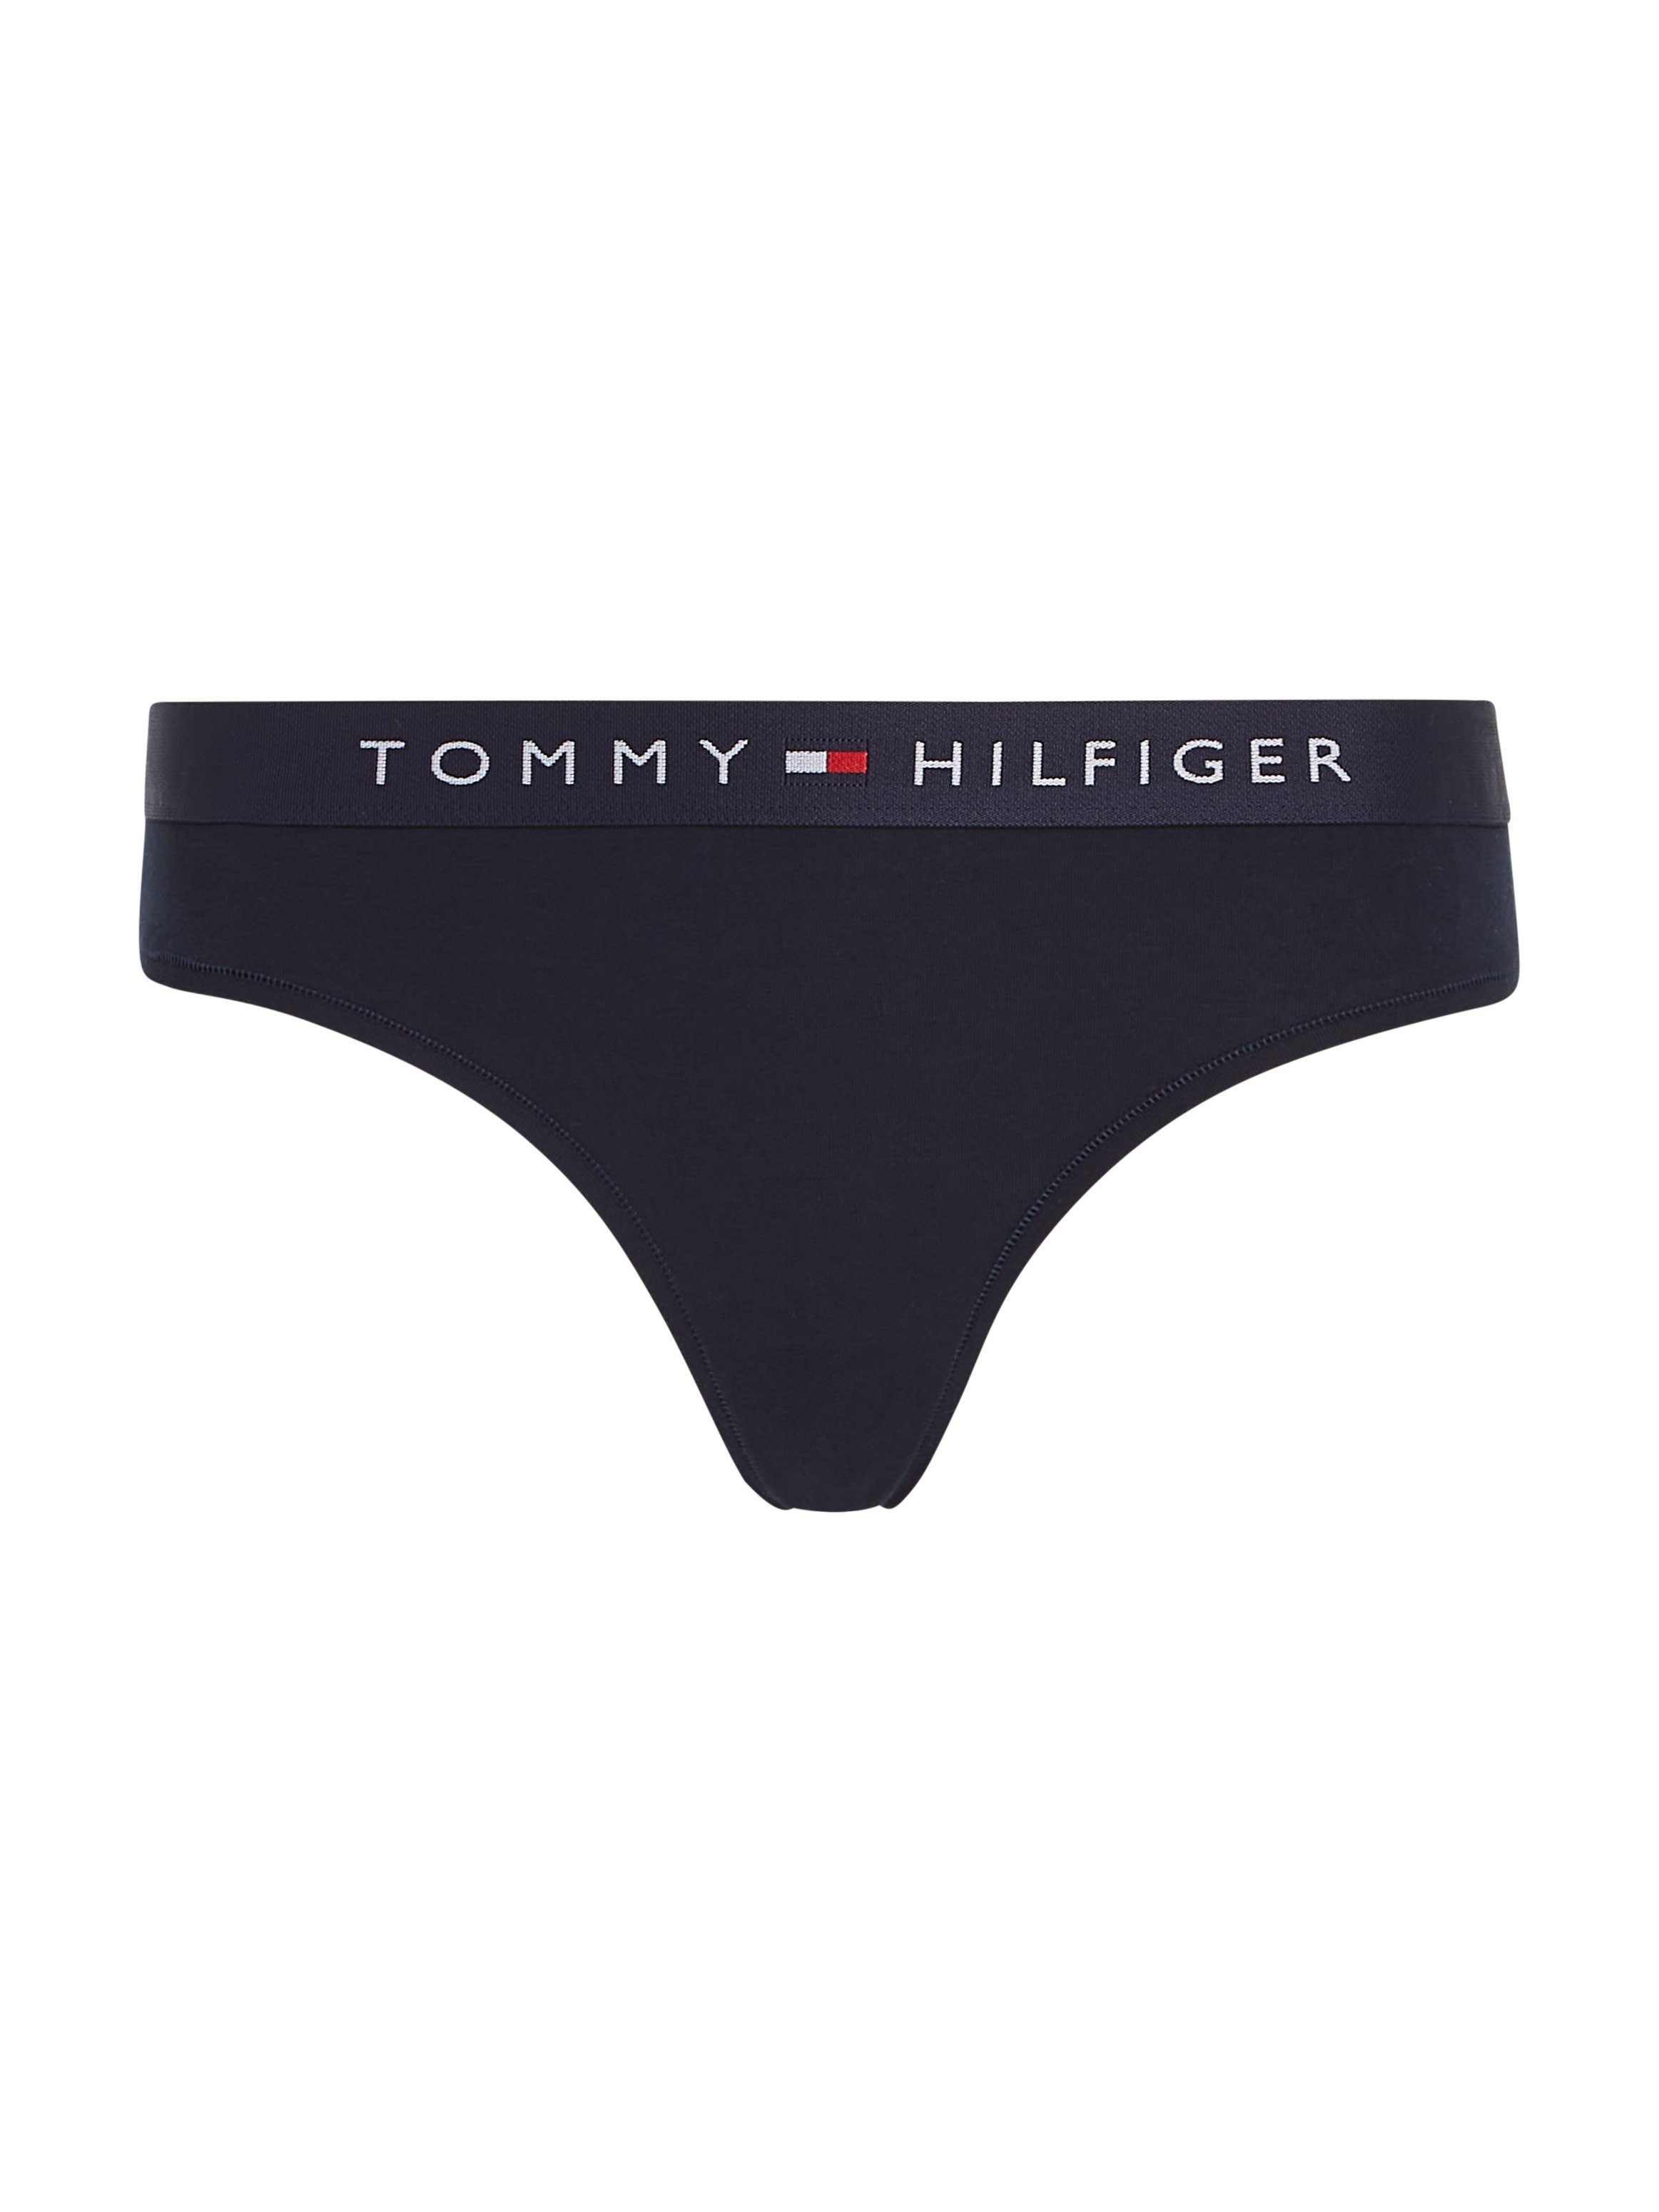 Slip THONG Hilfiger Underwear Tommy Hilfiger Desert-Sky mit Markenlabel Tommy